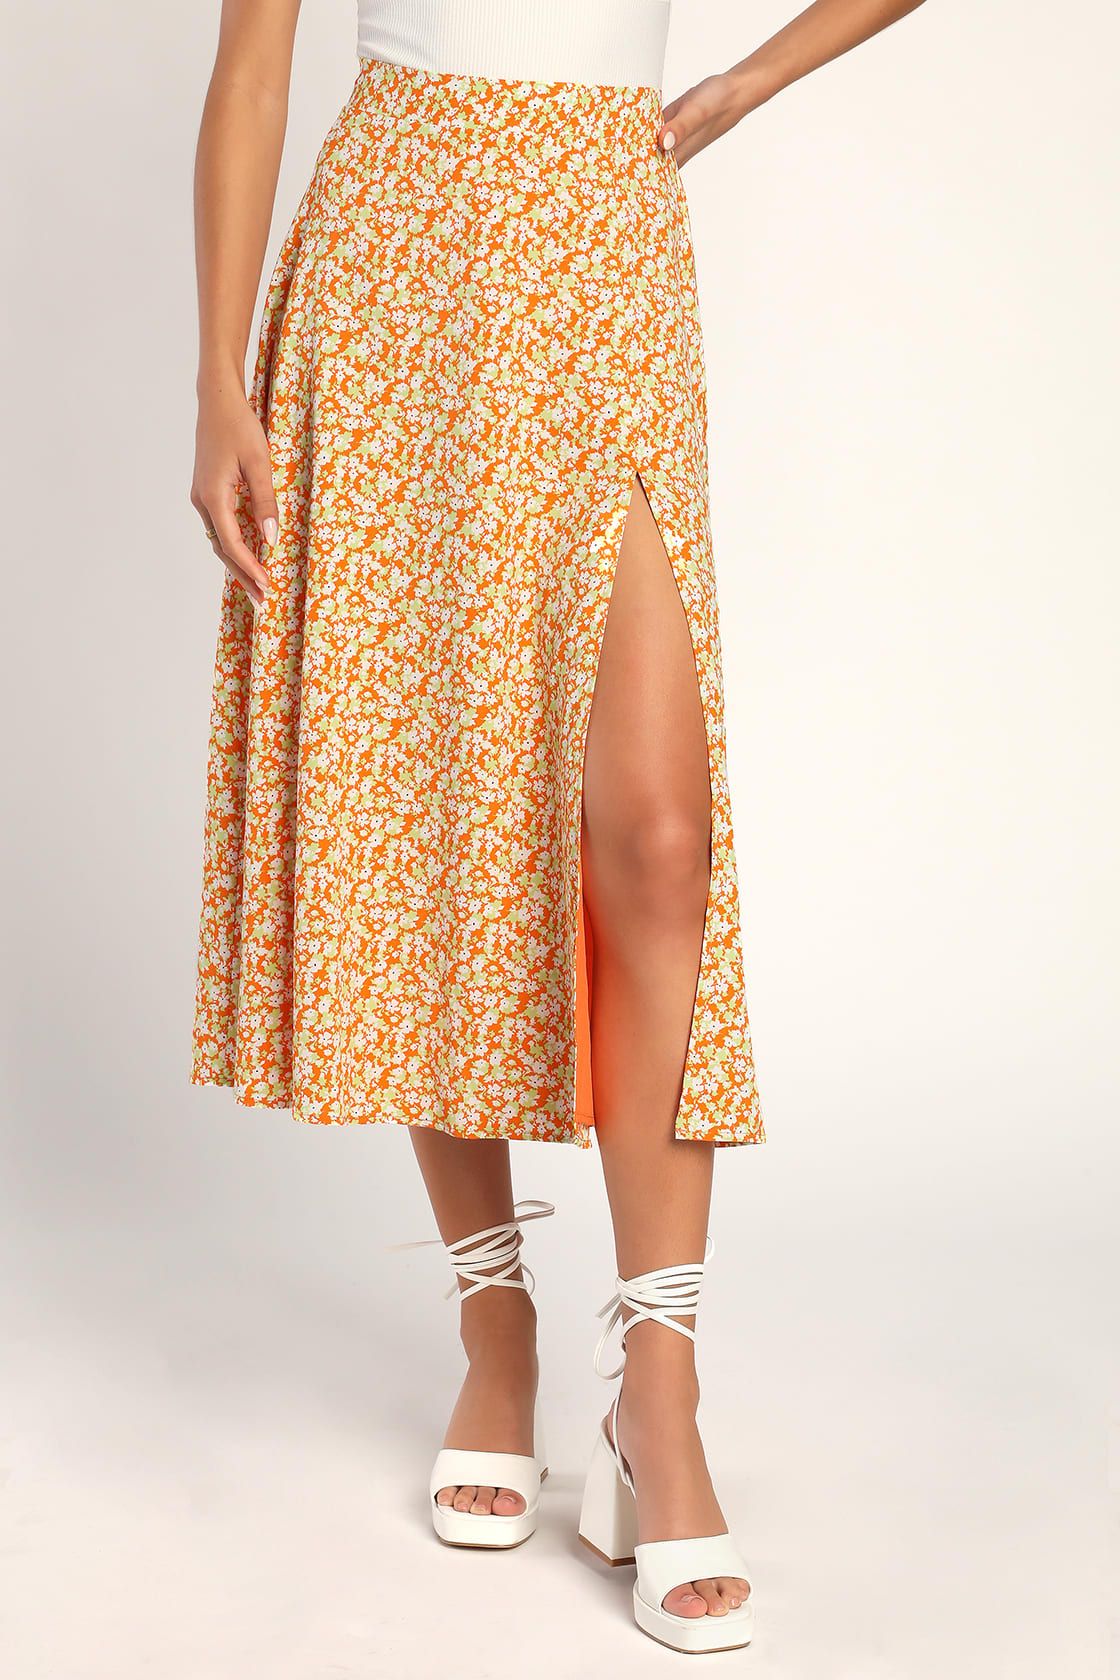 Botanical Brightness Orange Floral Print Slit Midi Skirt | Lulus (US)